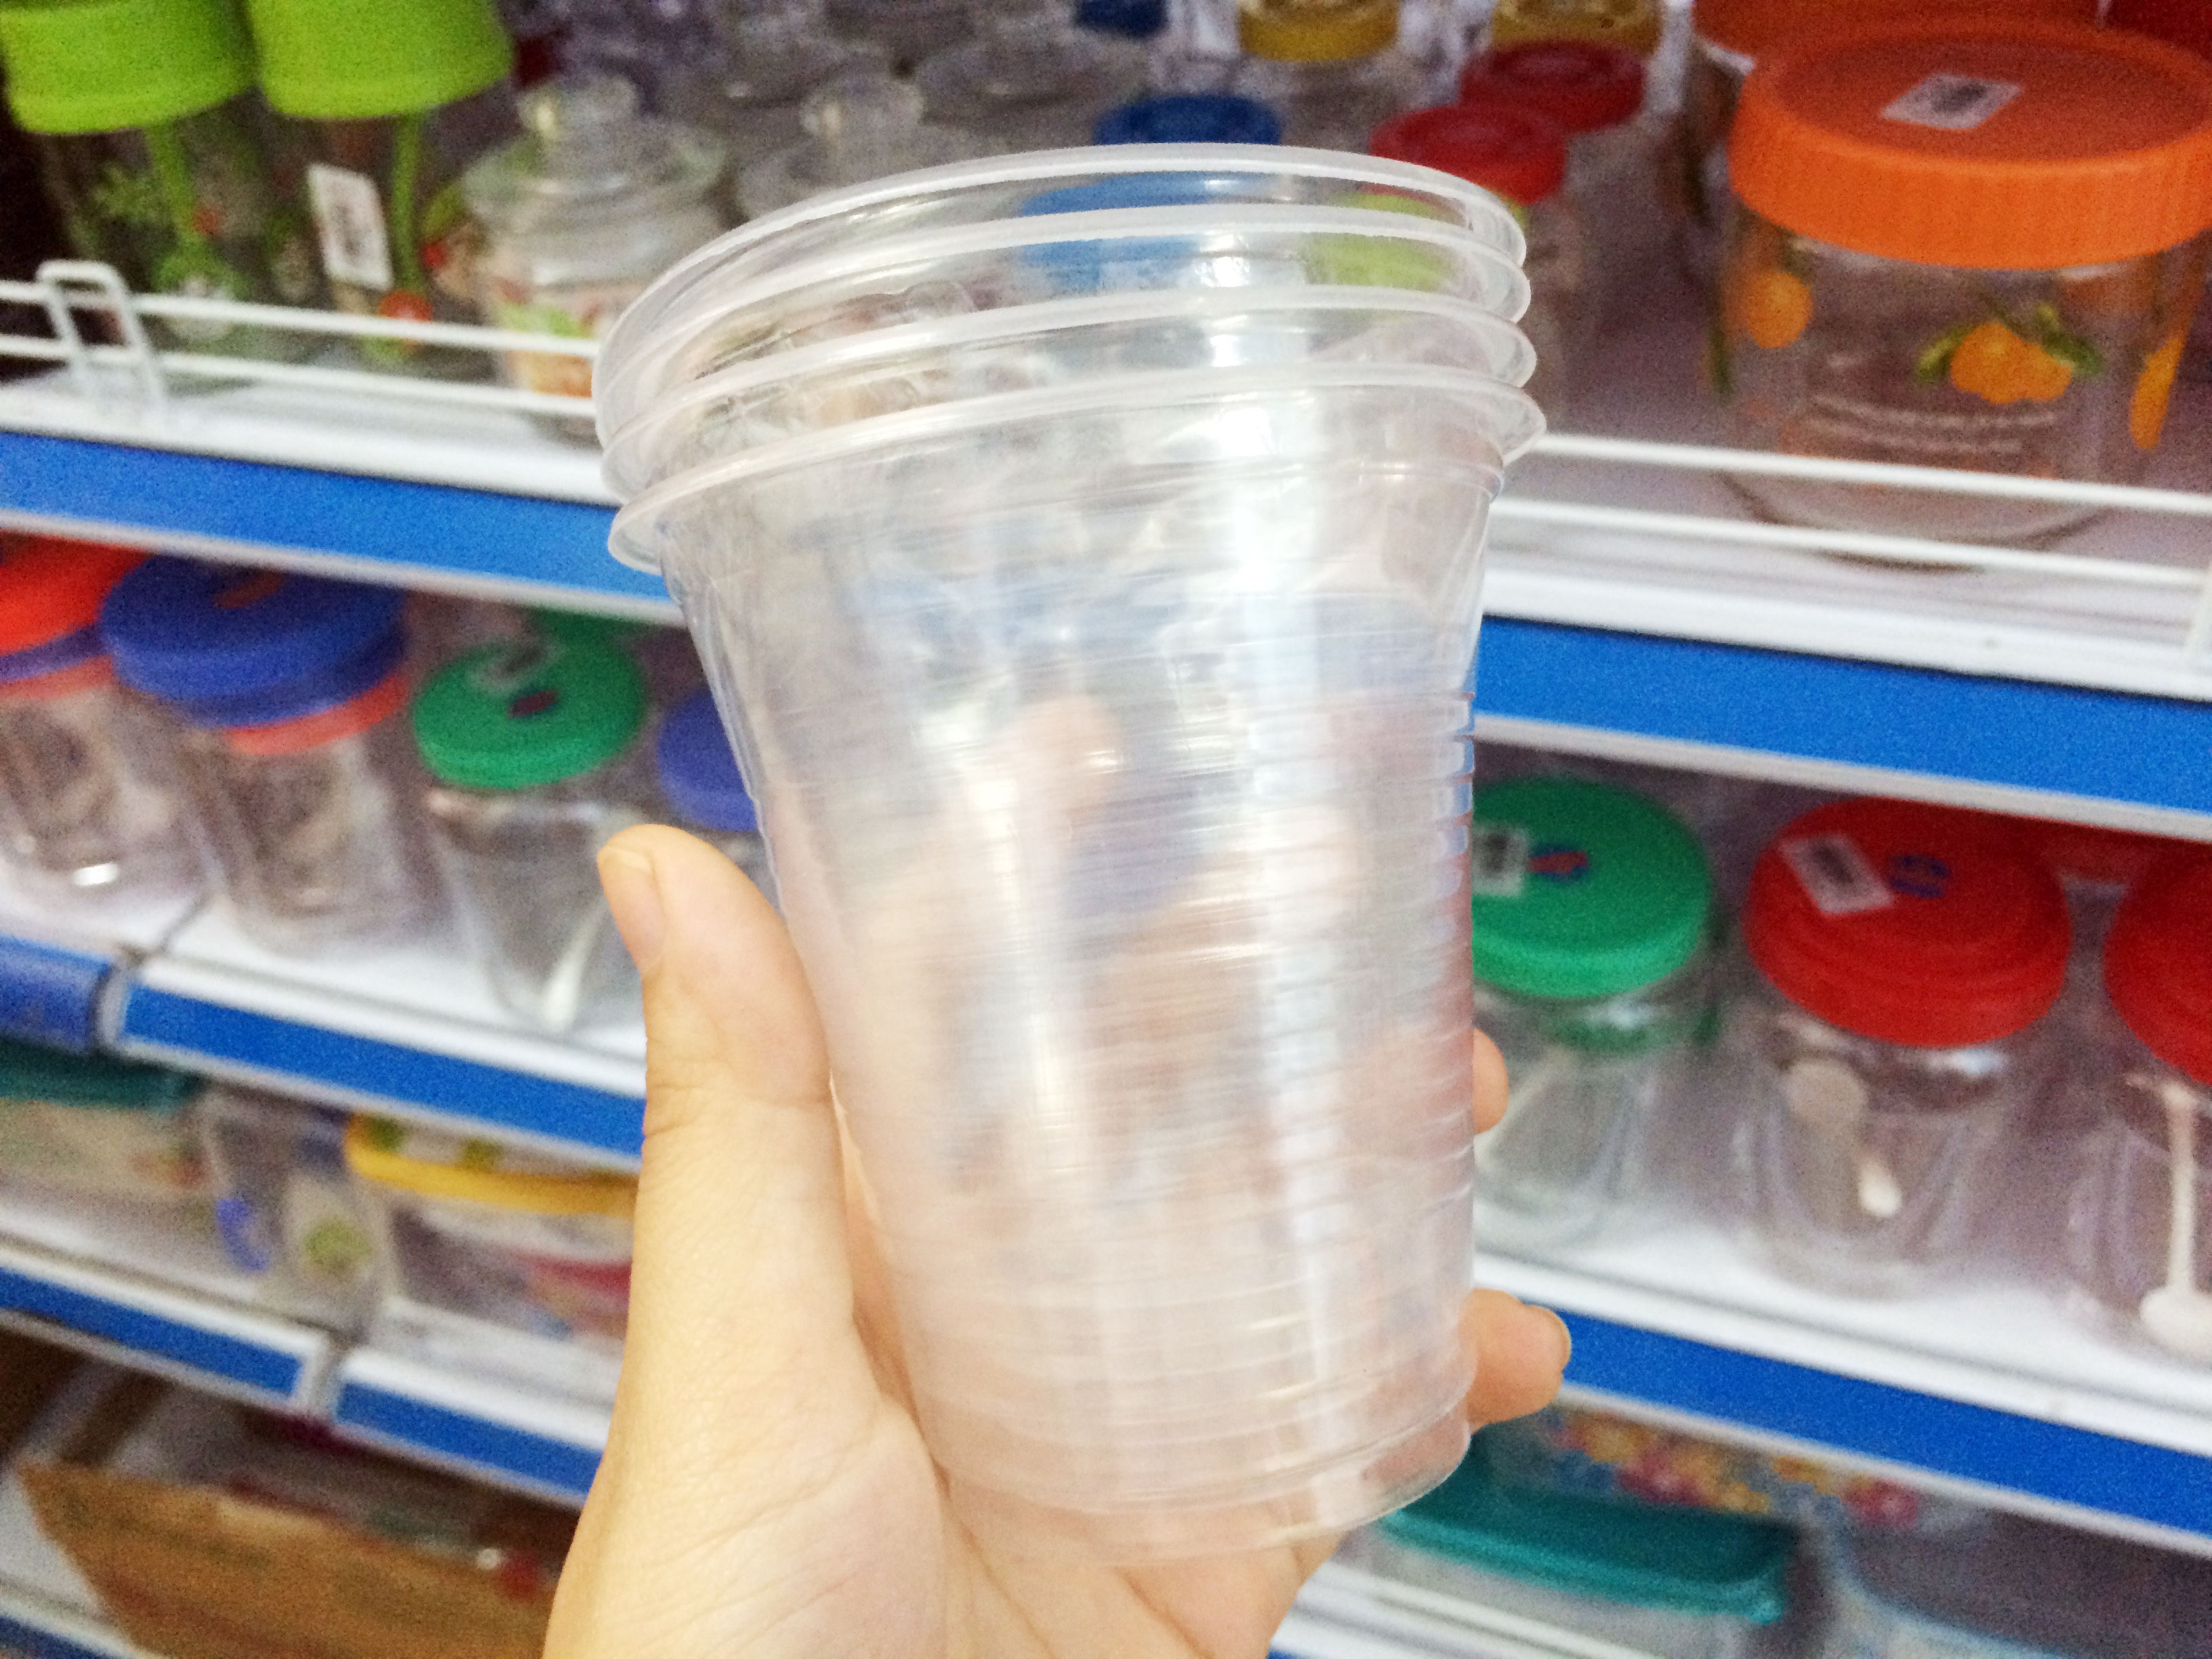 Đồ nhựa dùng một lần được bày bán tràn lan, người mua cần cẩn trọng